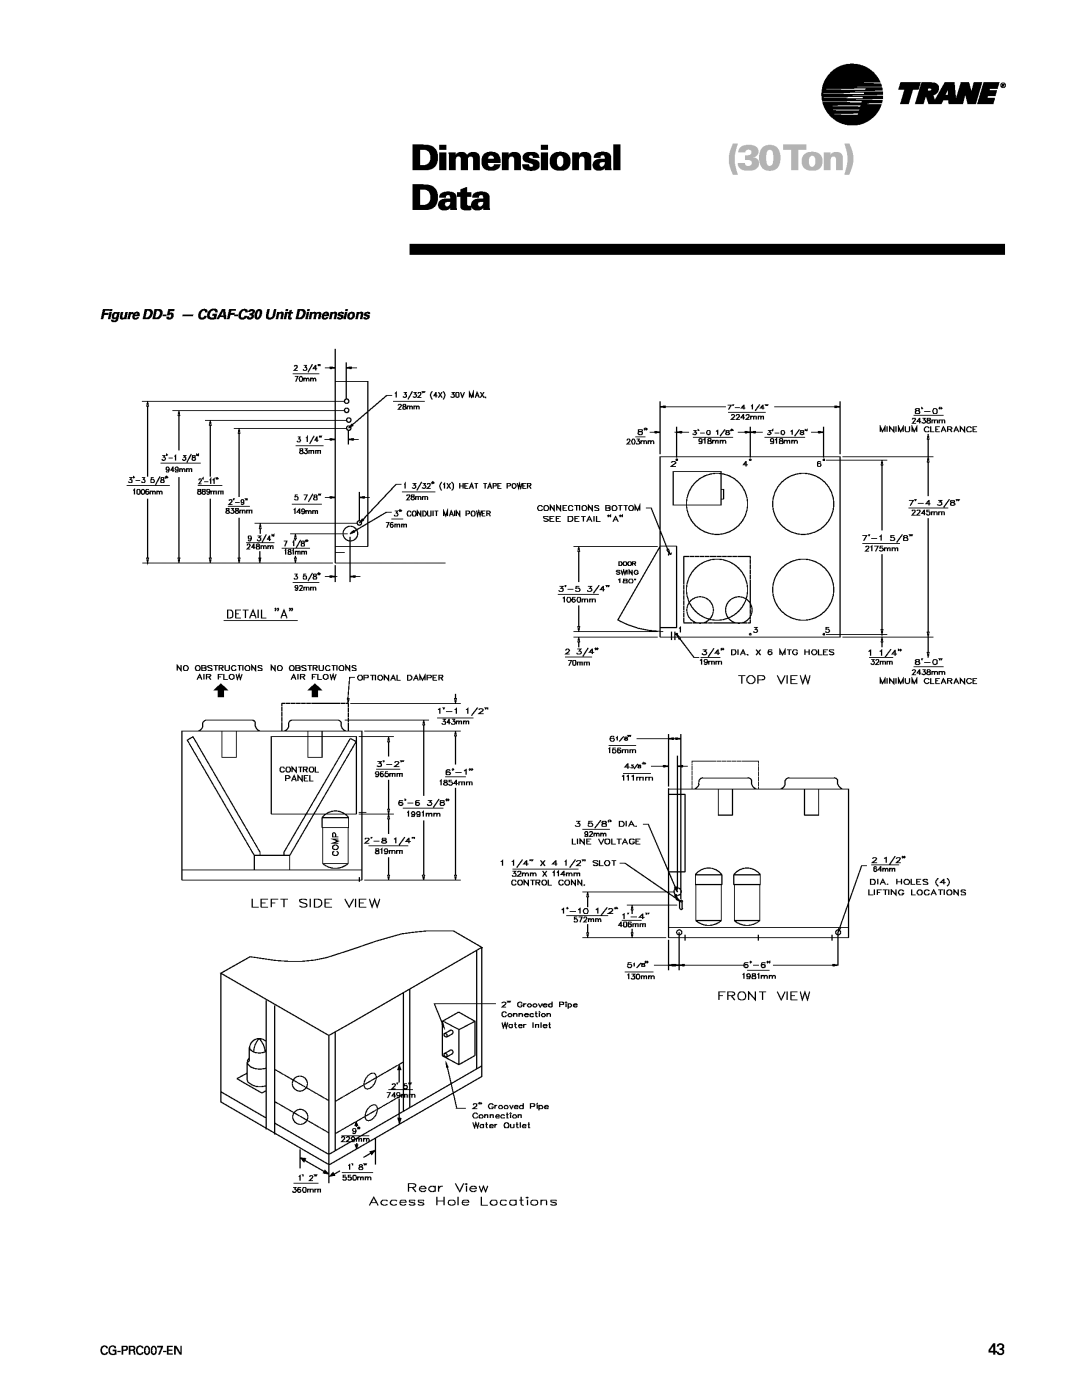 Trane CG-PRC007-EN manual Dimensional 30Ton Data, Figure DD-5- CGAF-C30Unit Dimensions 